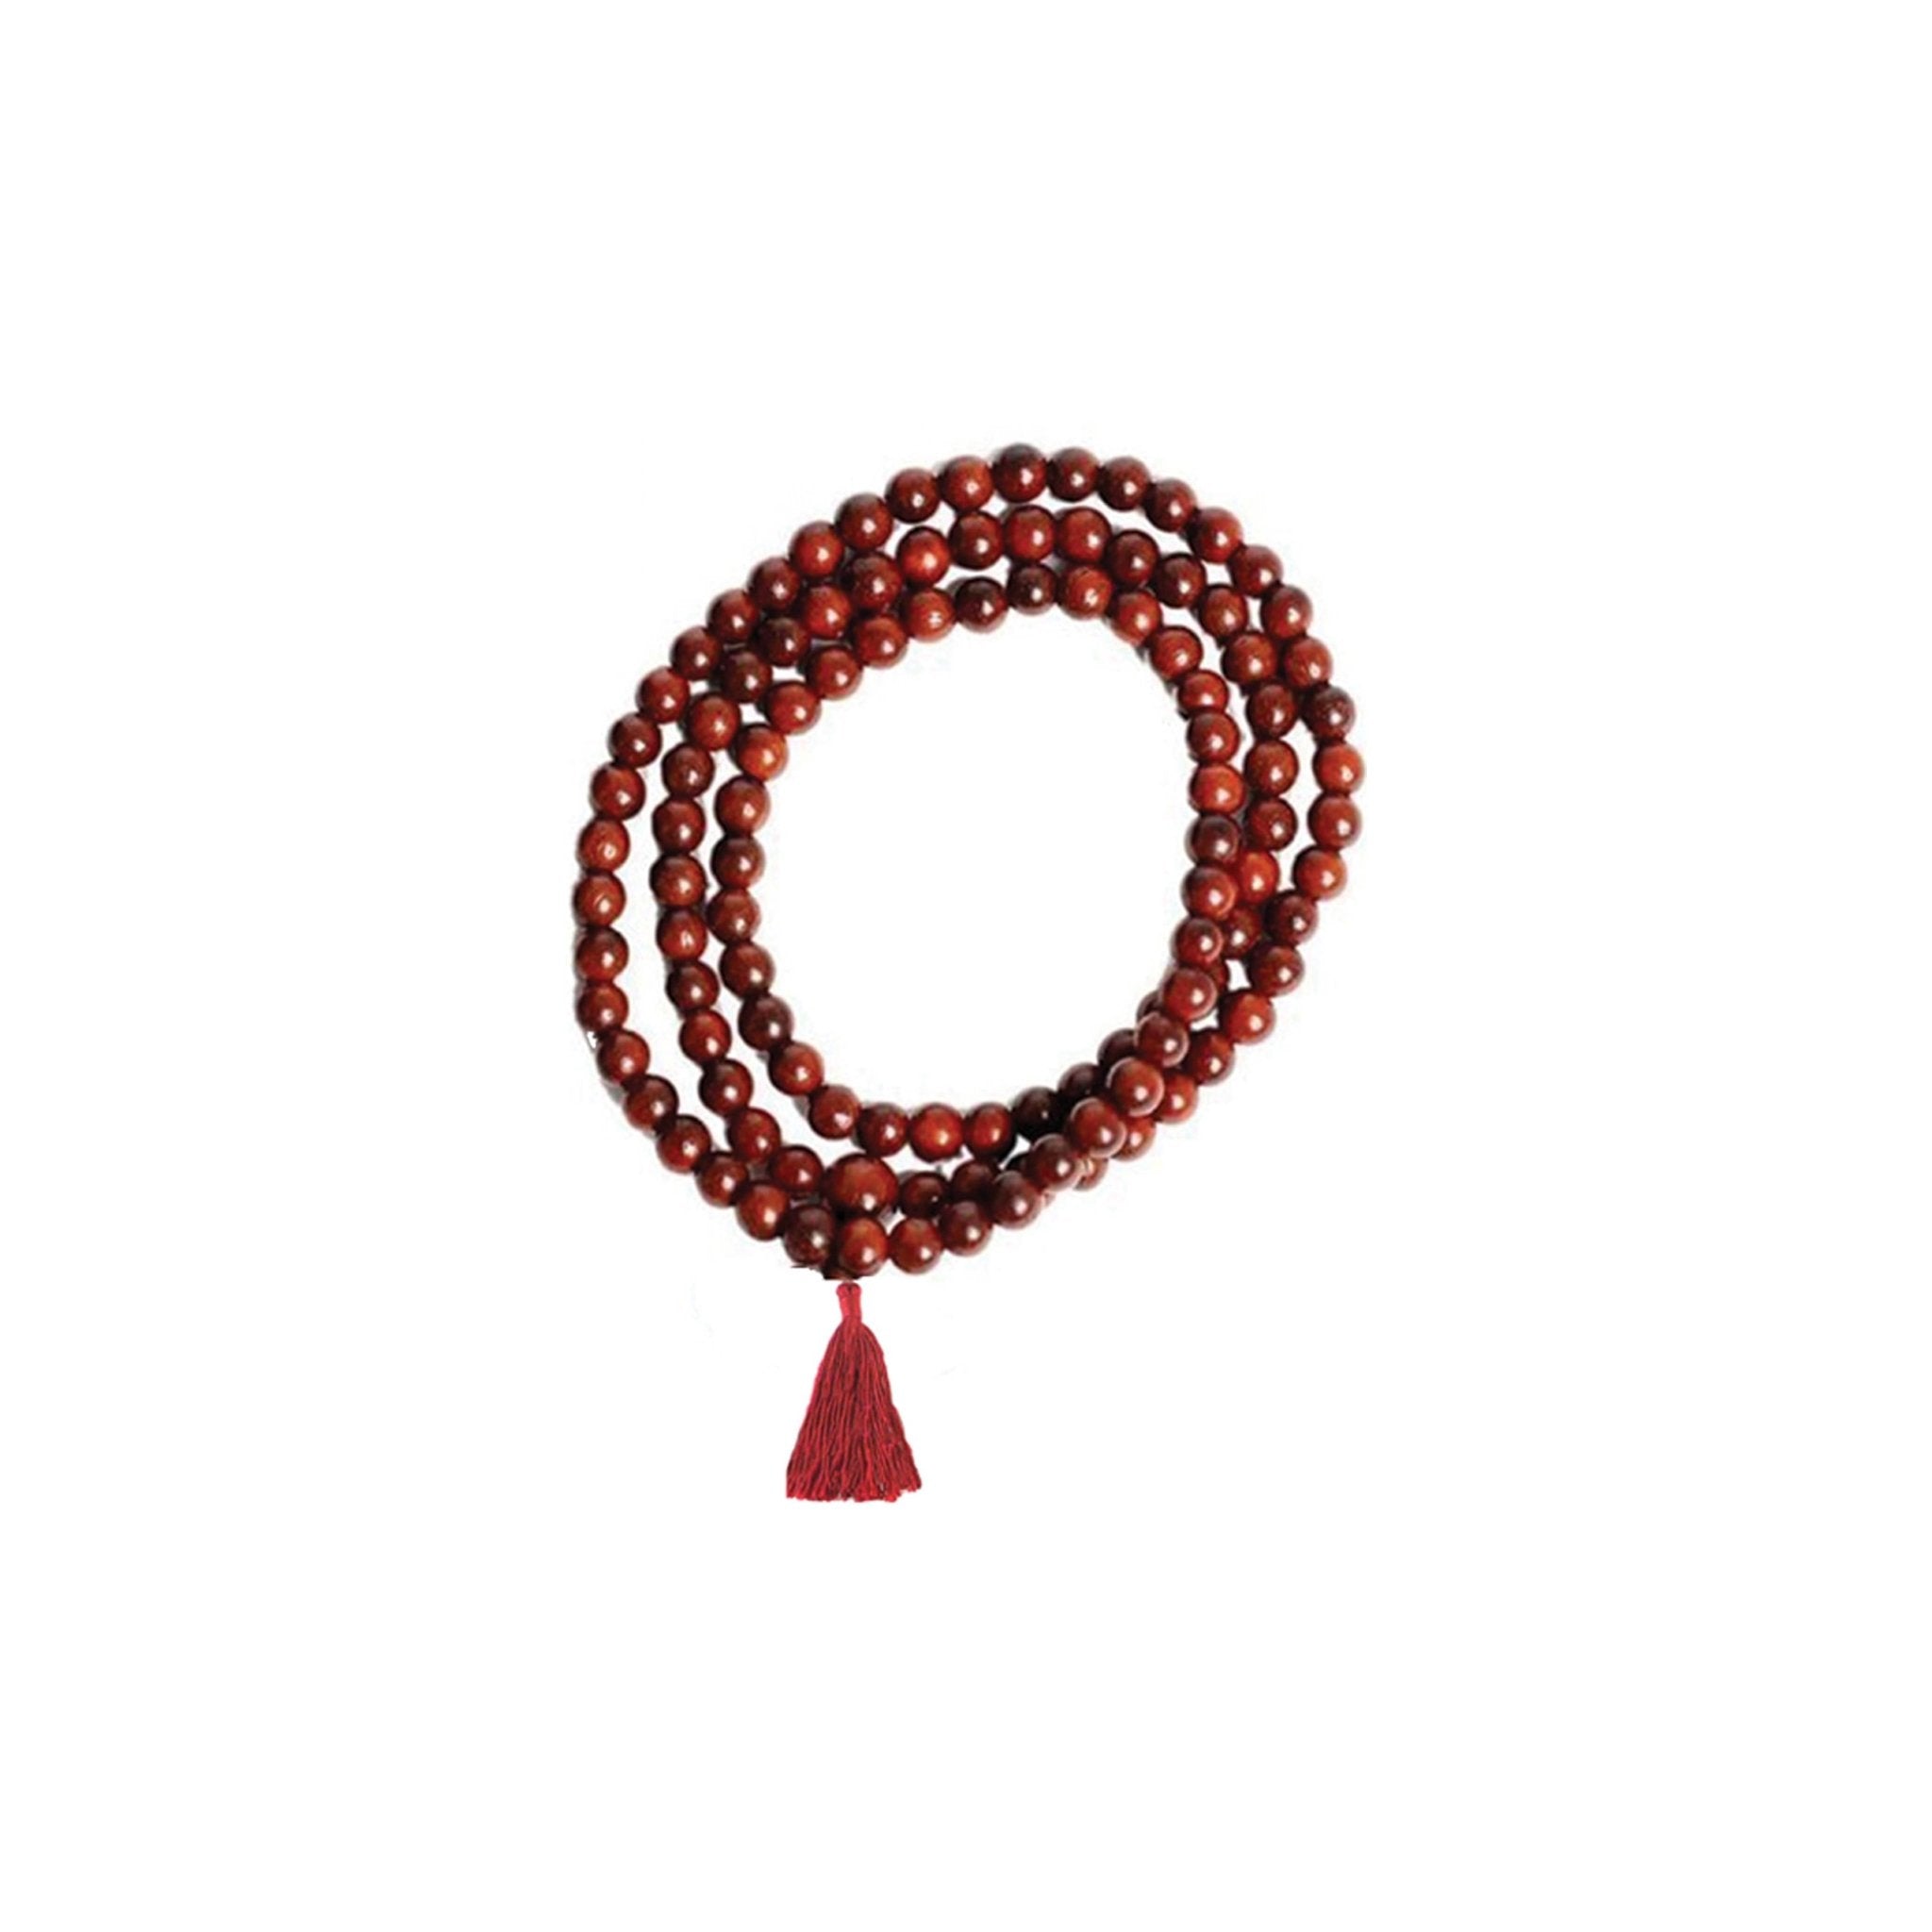 Redwood Mala Beads - Spiral Circle